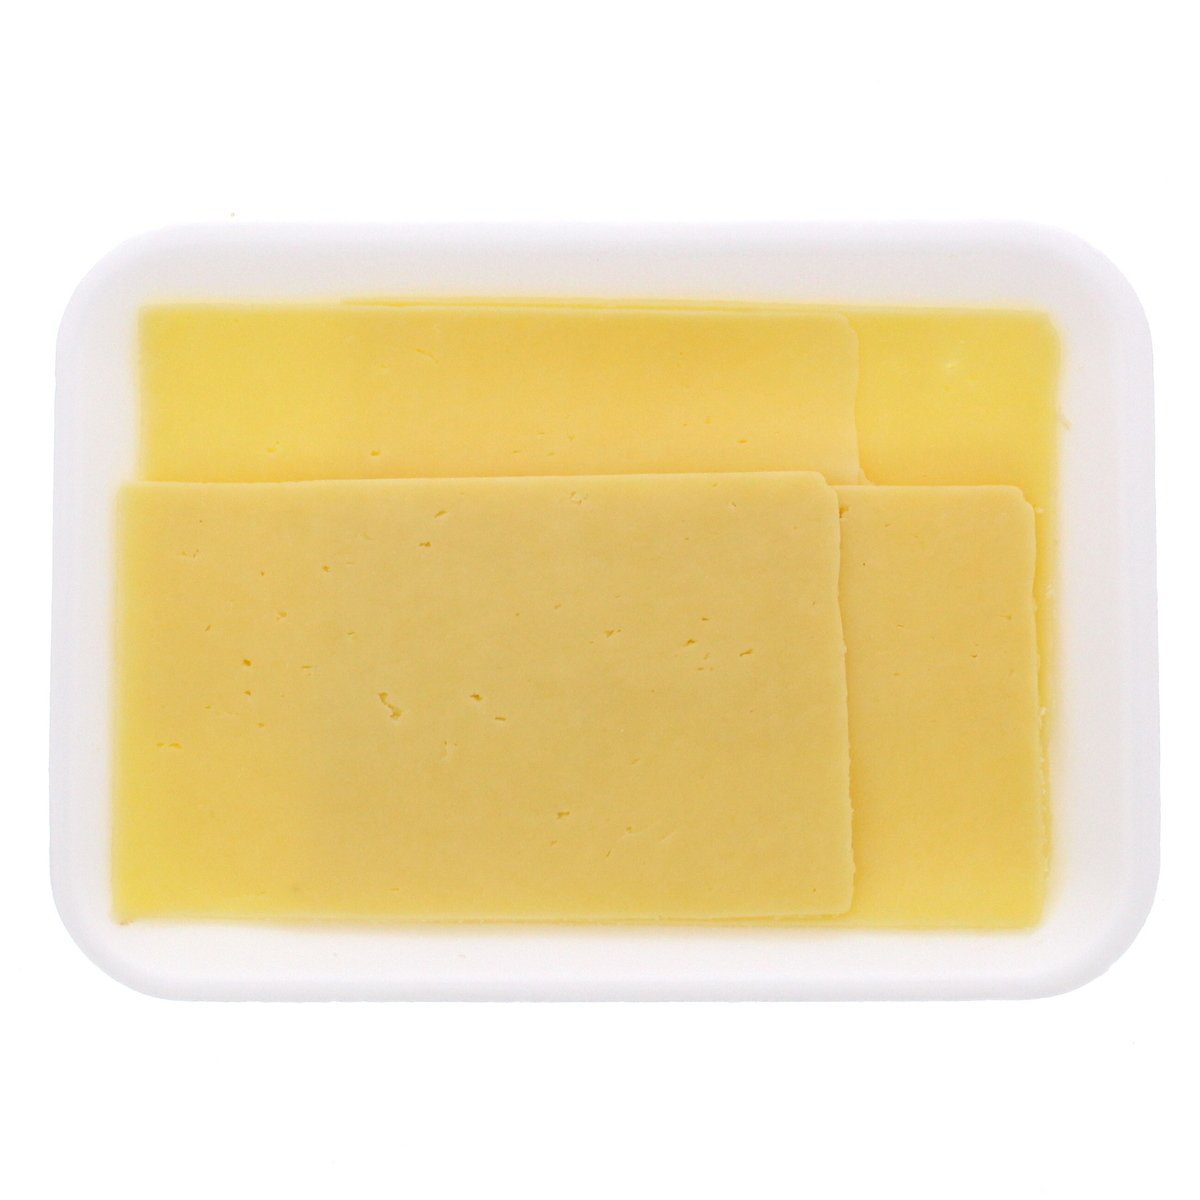 اشتري قم بشراء جبنة شيدر إنجليزية خفيفة 250 جرام تقريبًا Online at Best Price من الموقع - من لولو هايبر ماركت English Cheese في السعودية